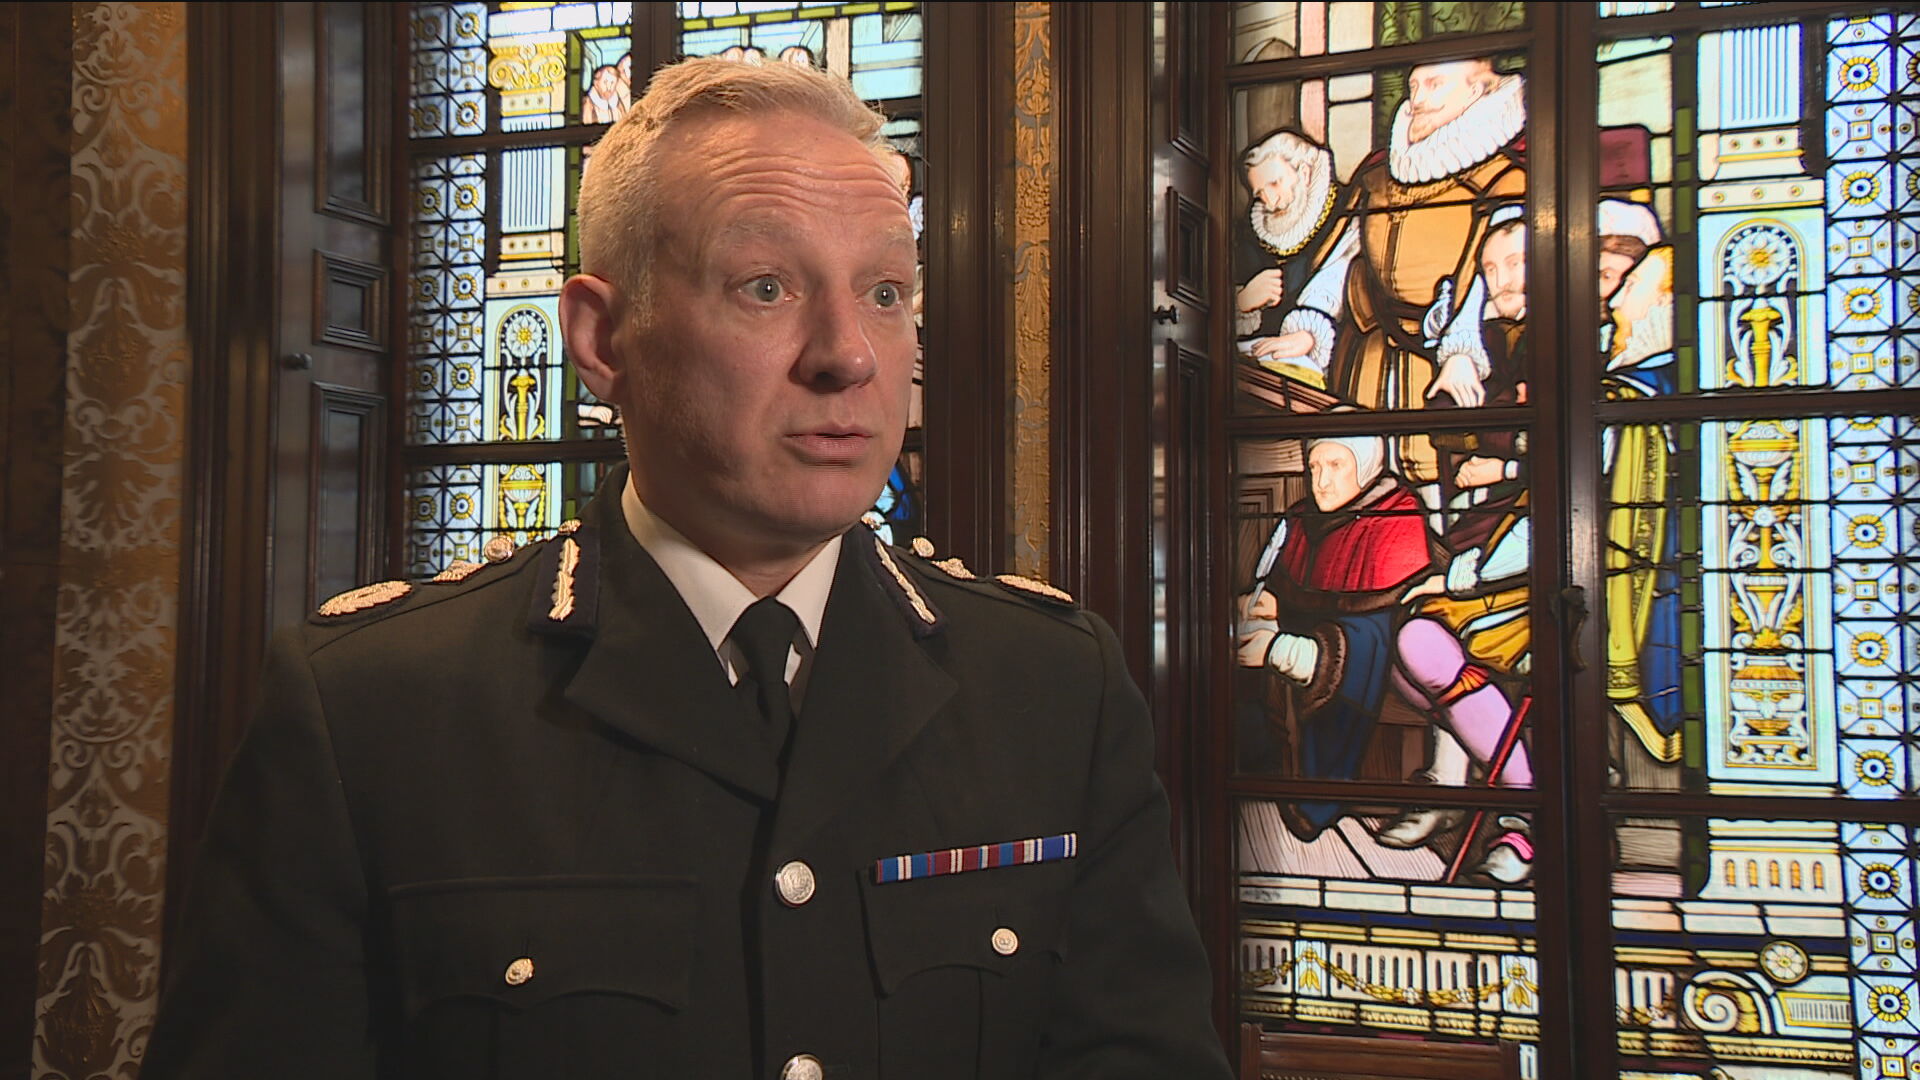 Deputy Chief Constable Malcolm Graham